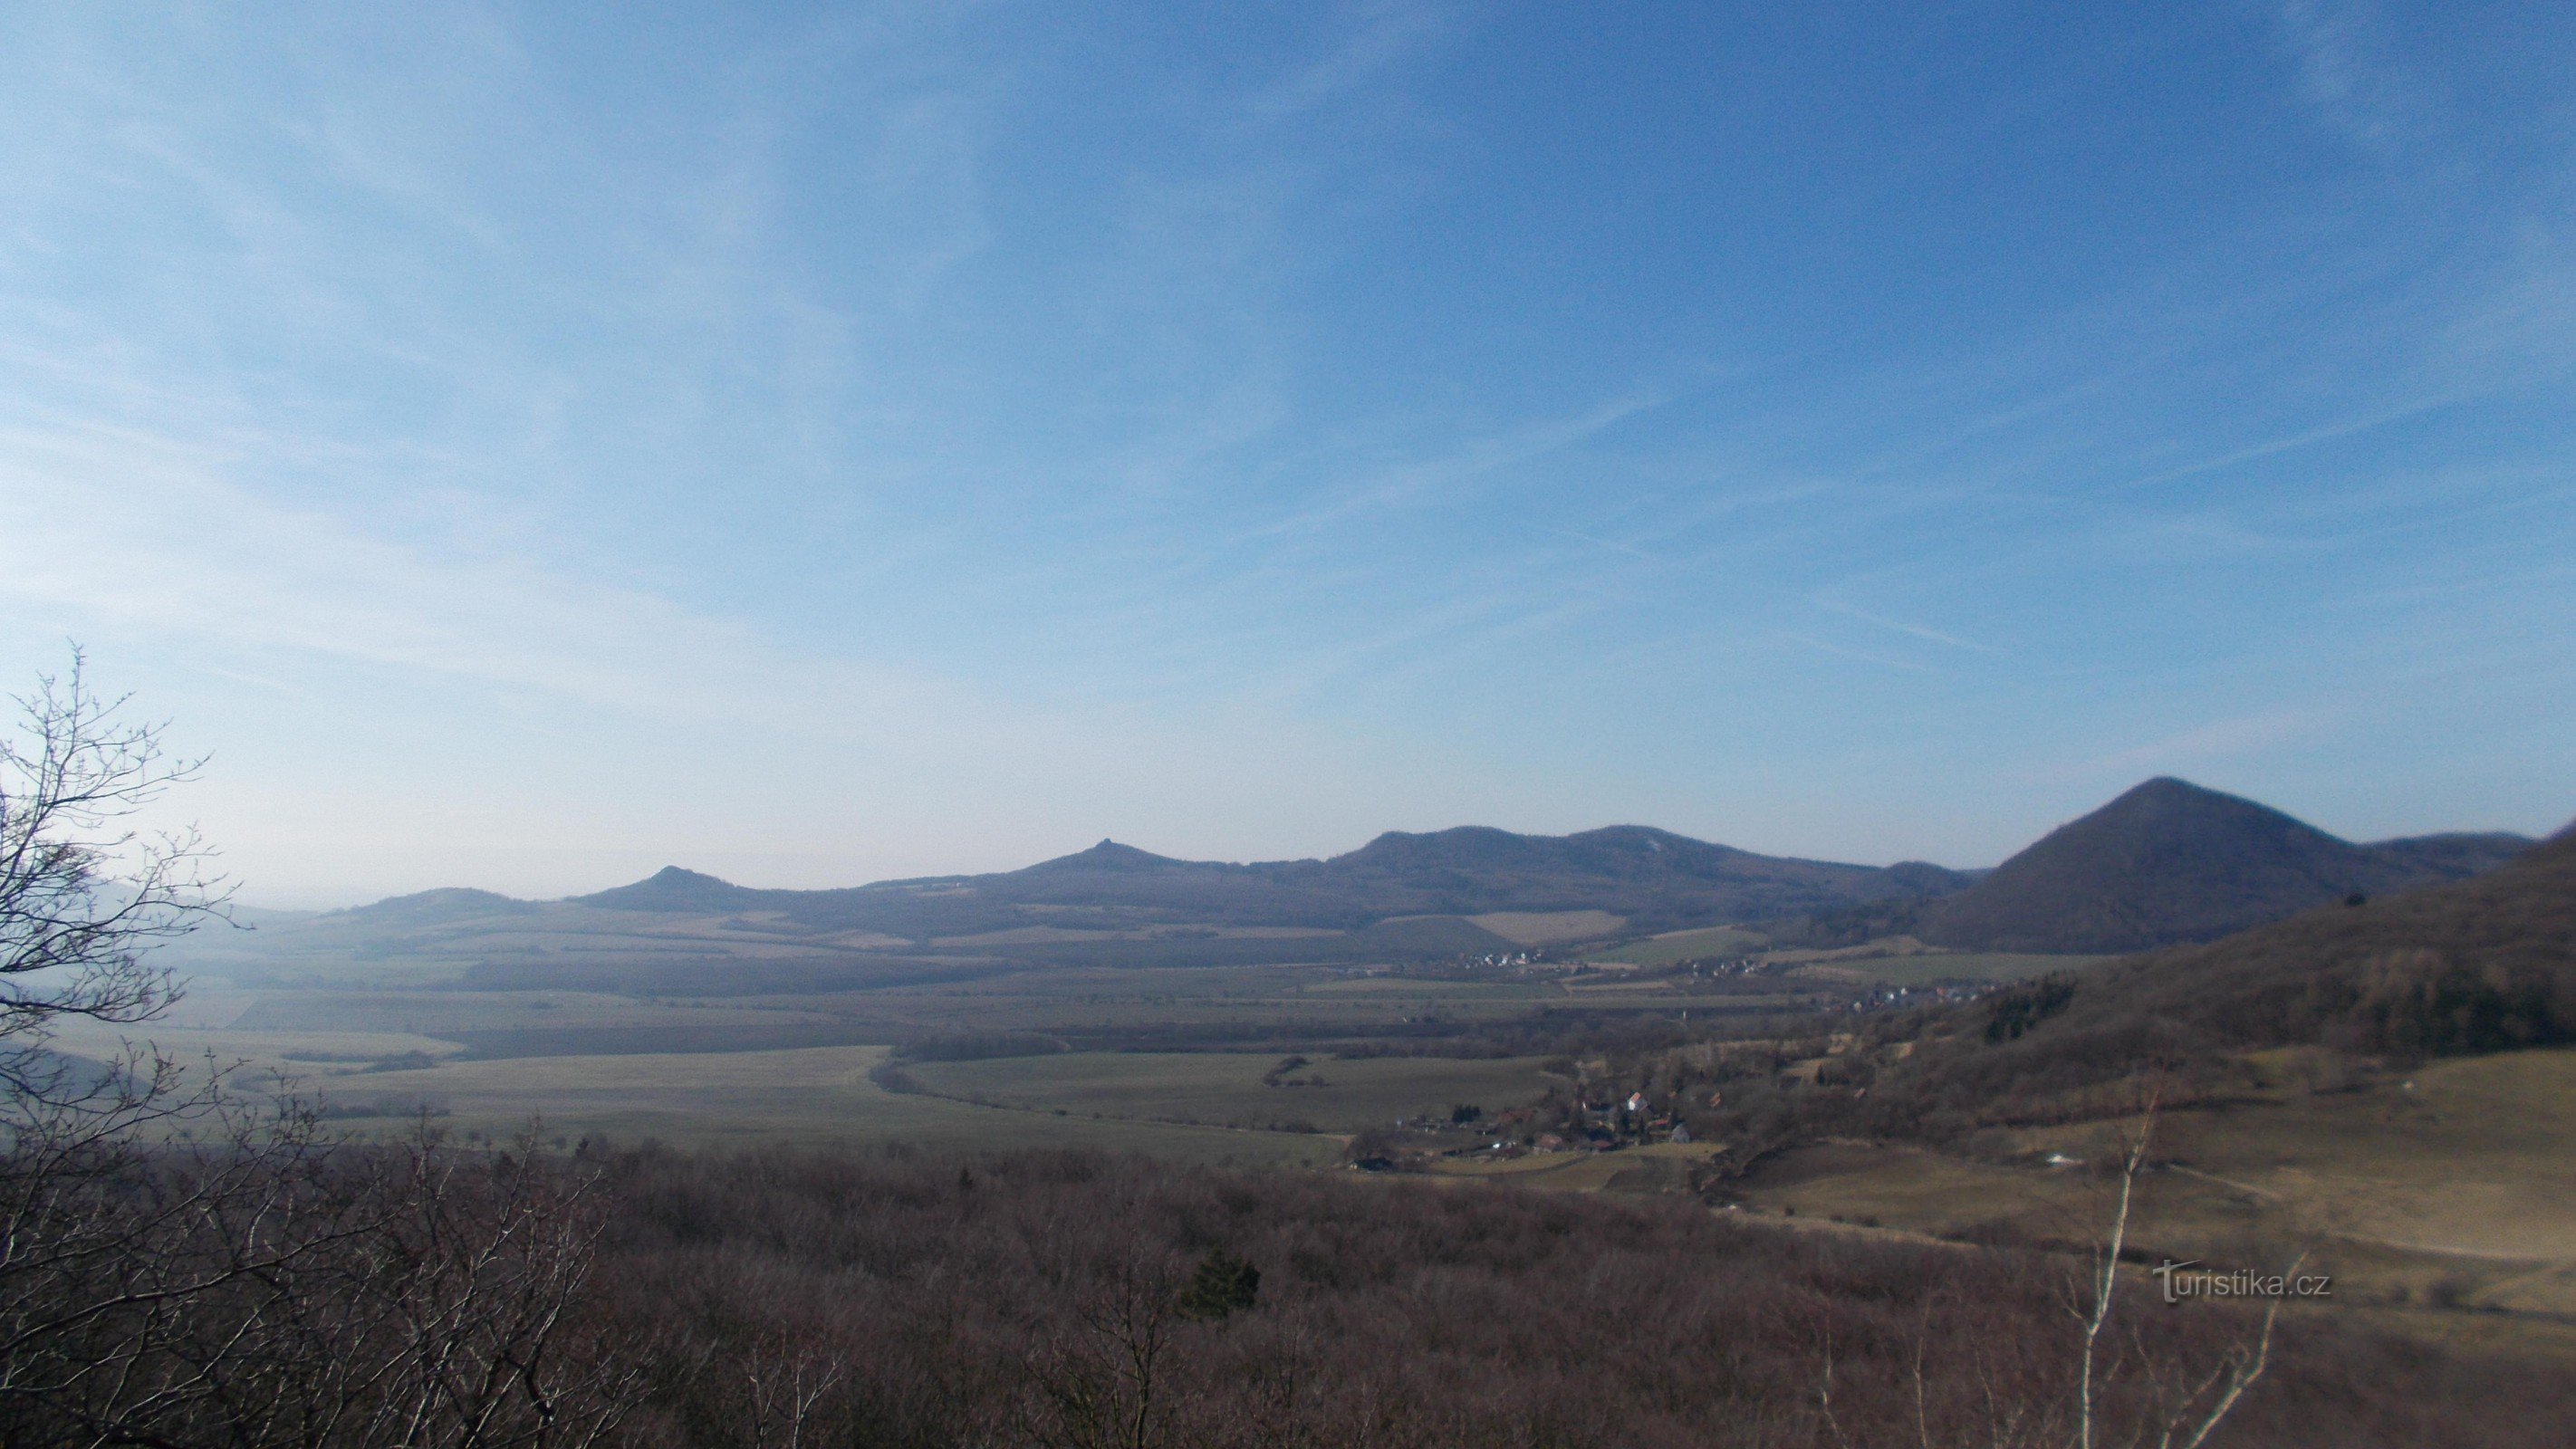 Το νοτιοδυτικό τμήμα των κεντρικών βουνών της Βοημίας όπως φαίνεται από το Ostrý.